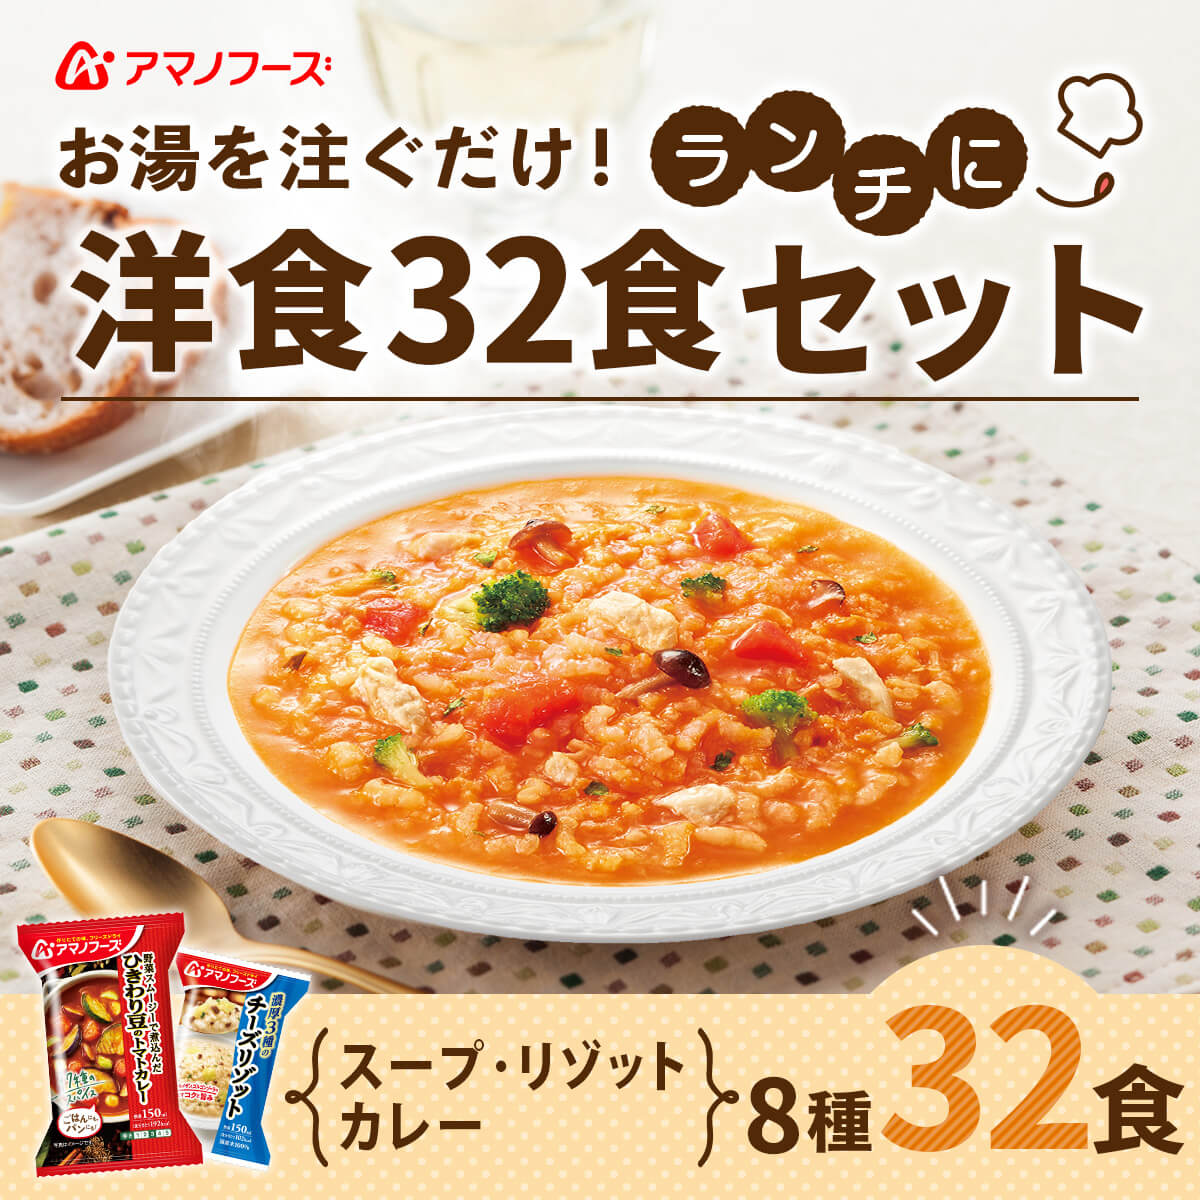 アマノフーズ リゾット・カレー・スープ ギフト   定価6480円